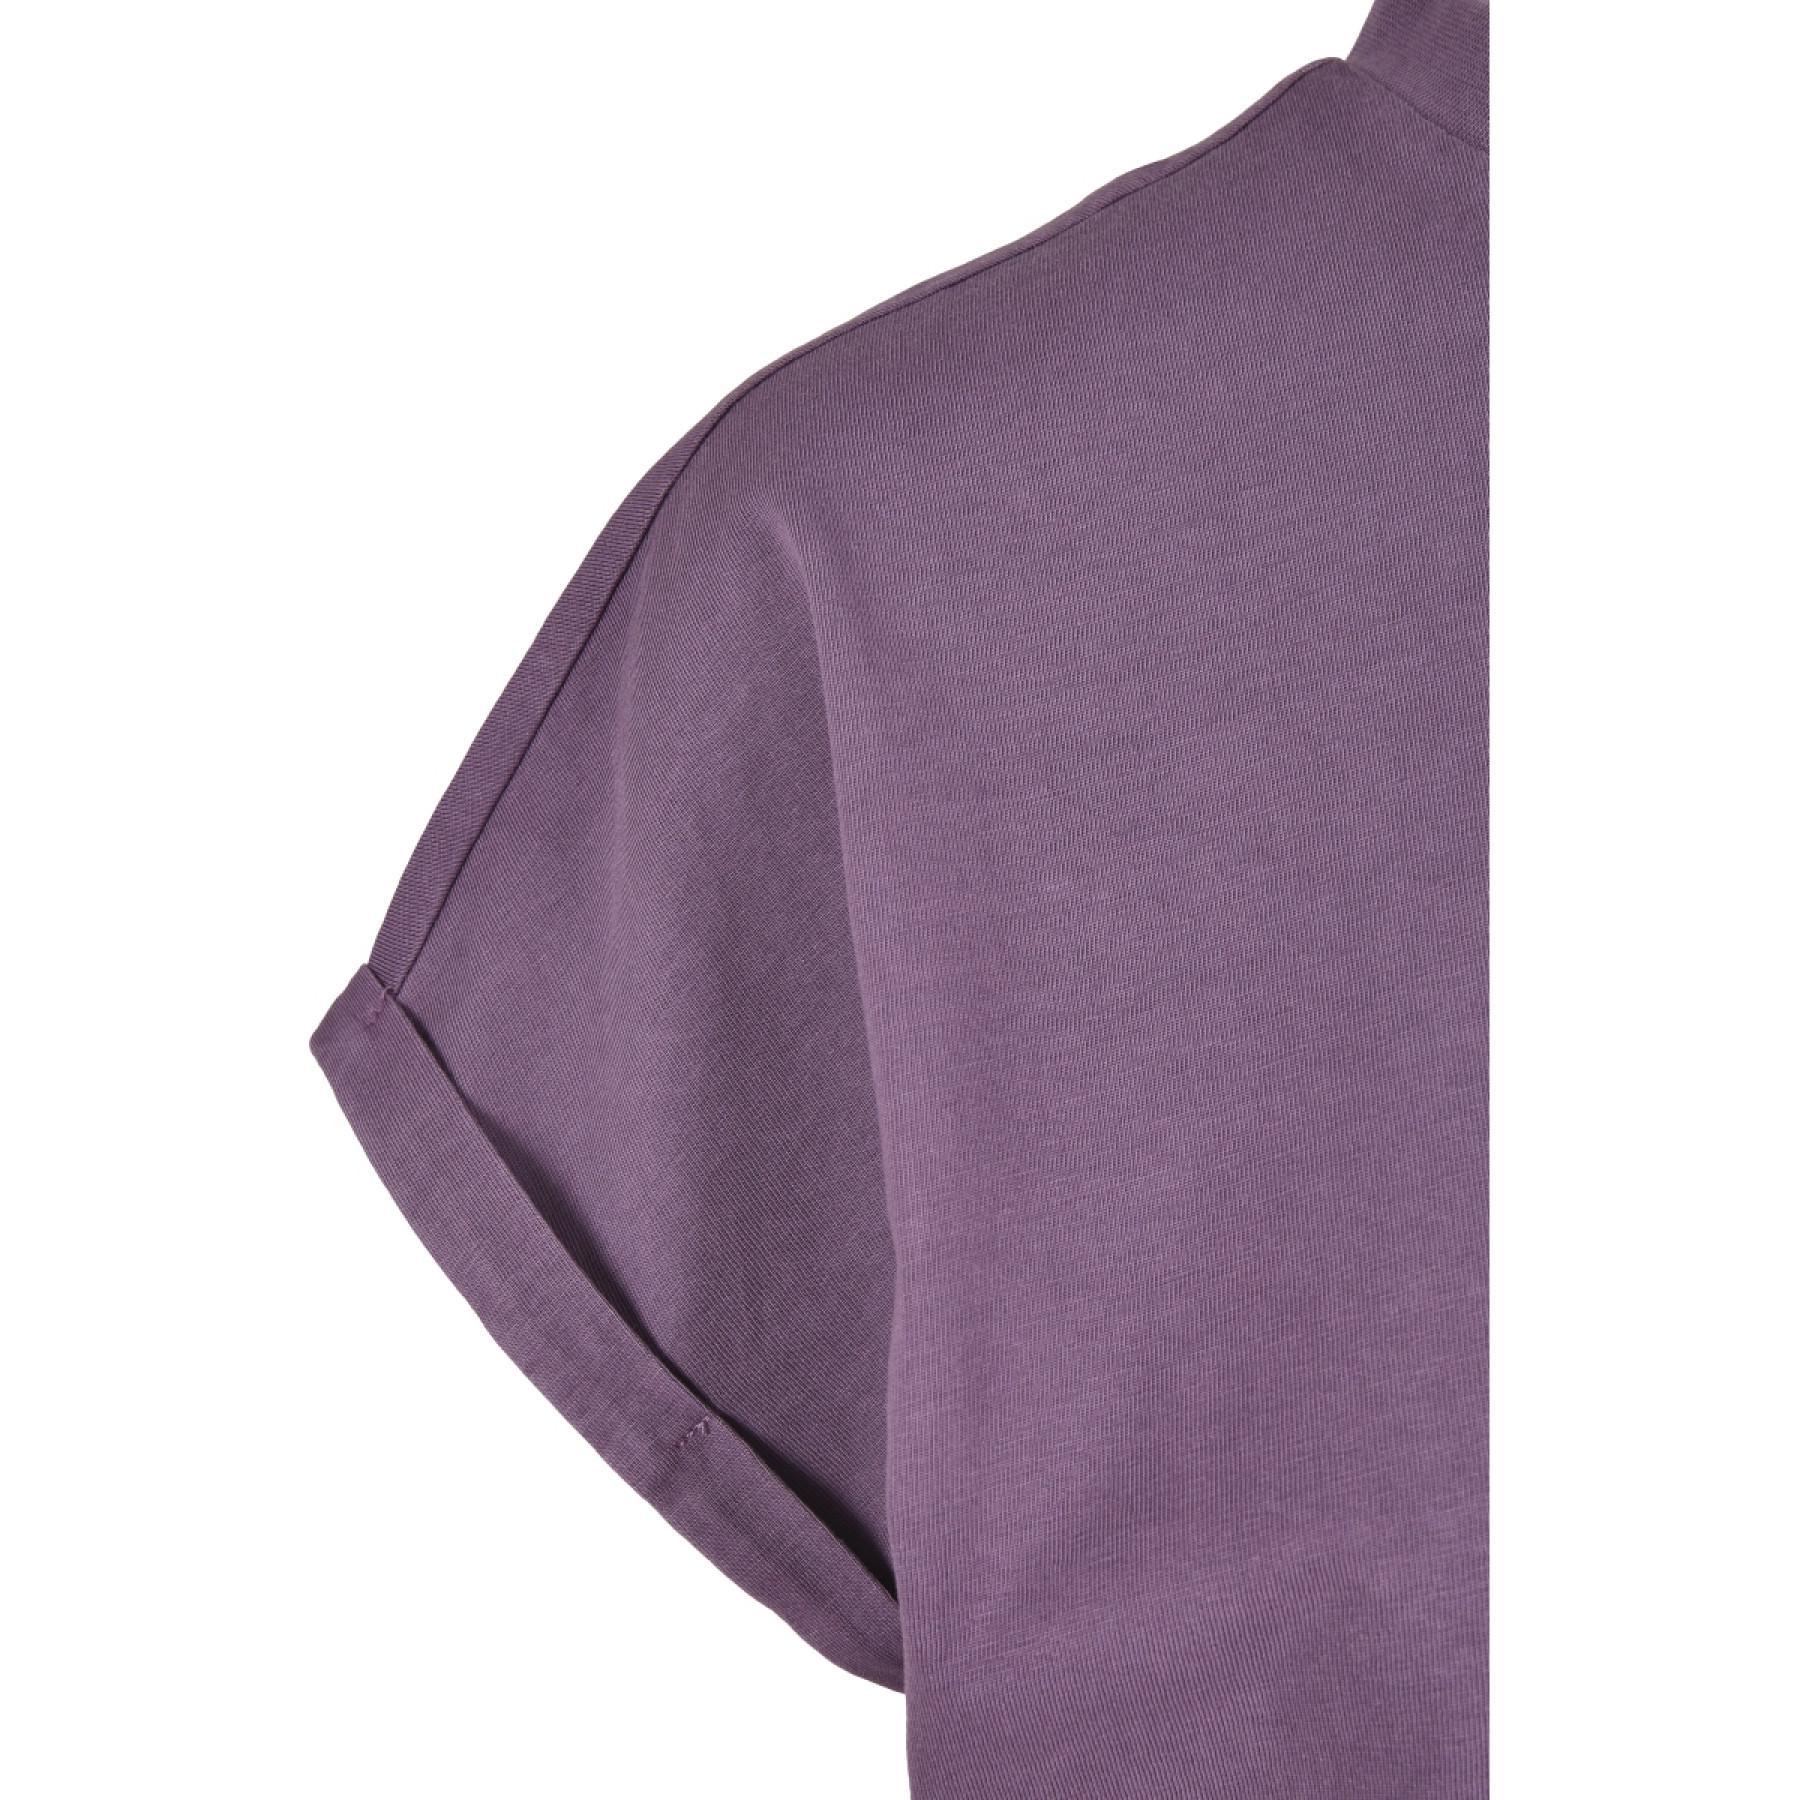 T-shirt femme Urban Classics short pigment dye découpé-grandes tailles